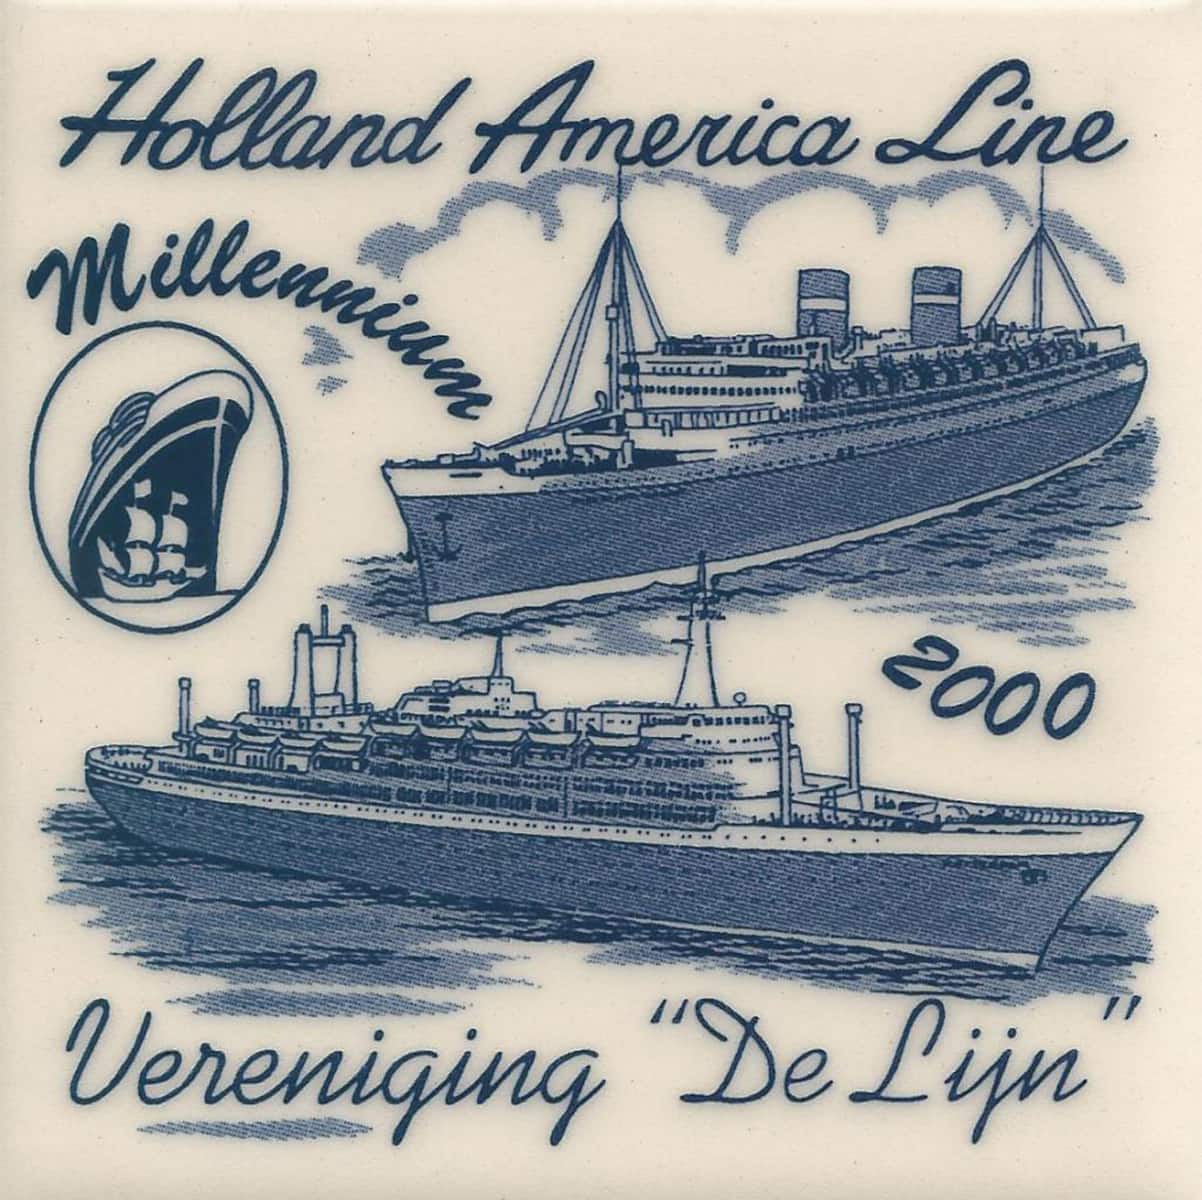 Holland America Line Millenium commemorative tile, Vereniging De Lijn, 2000